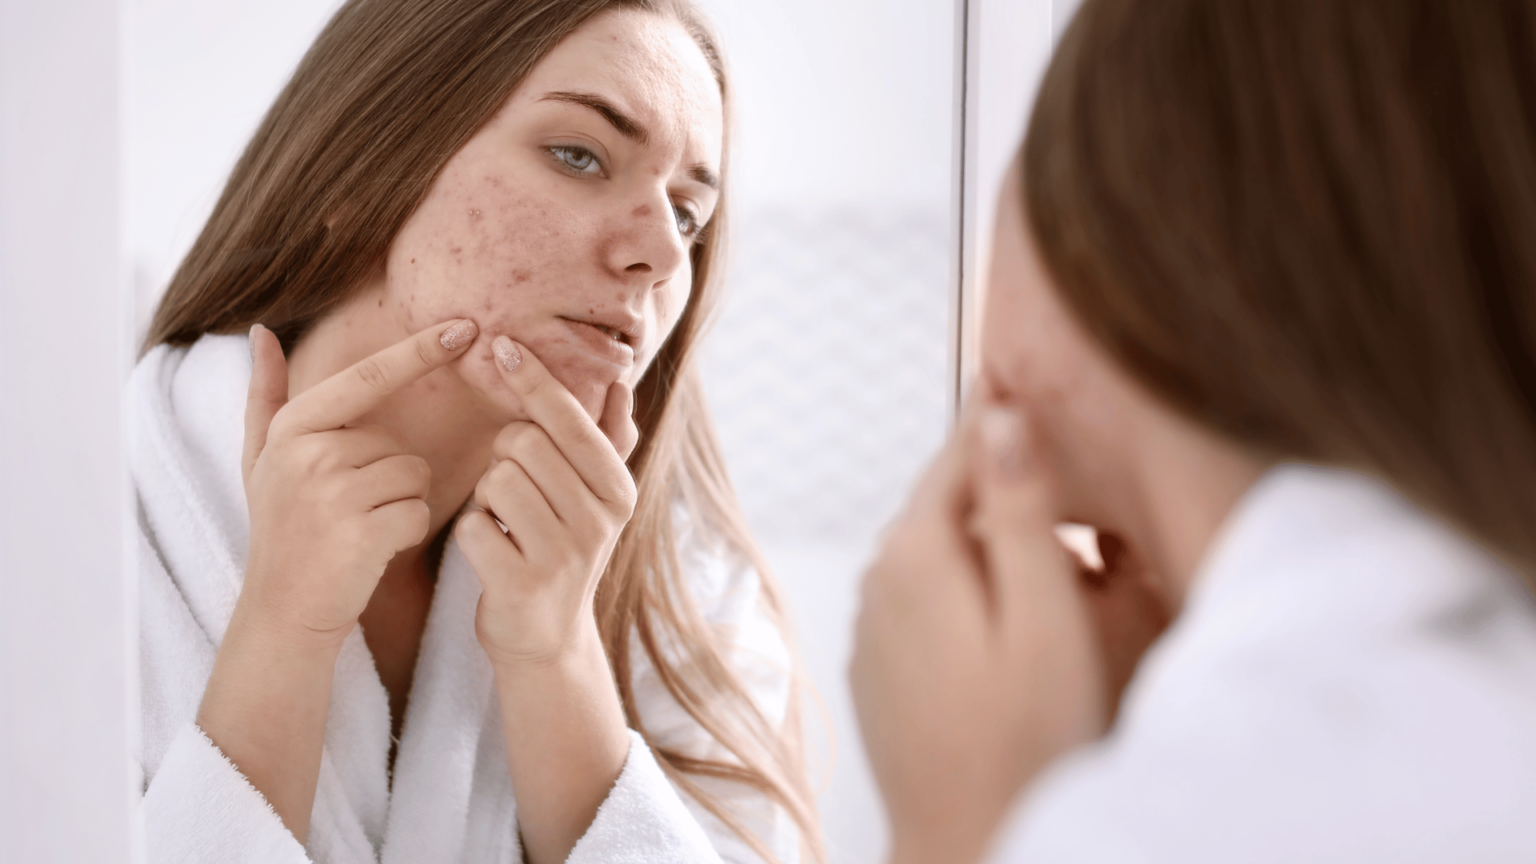 4 étapes pour soigner l’acné naturellement